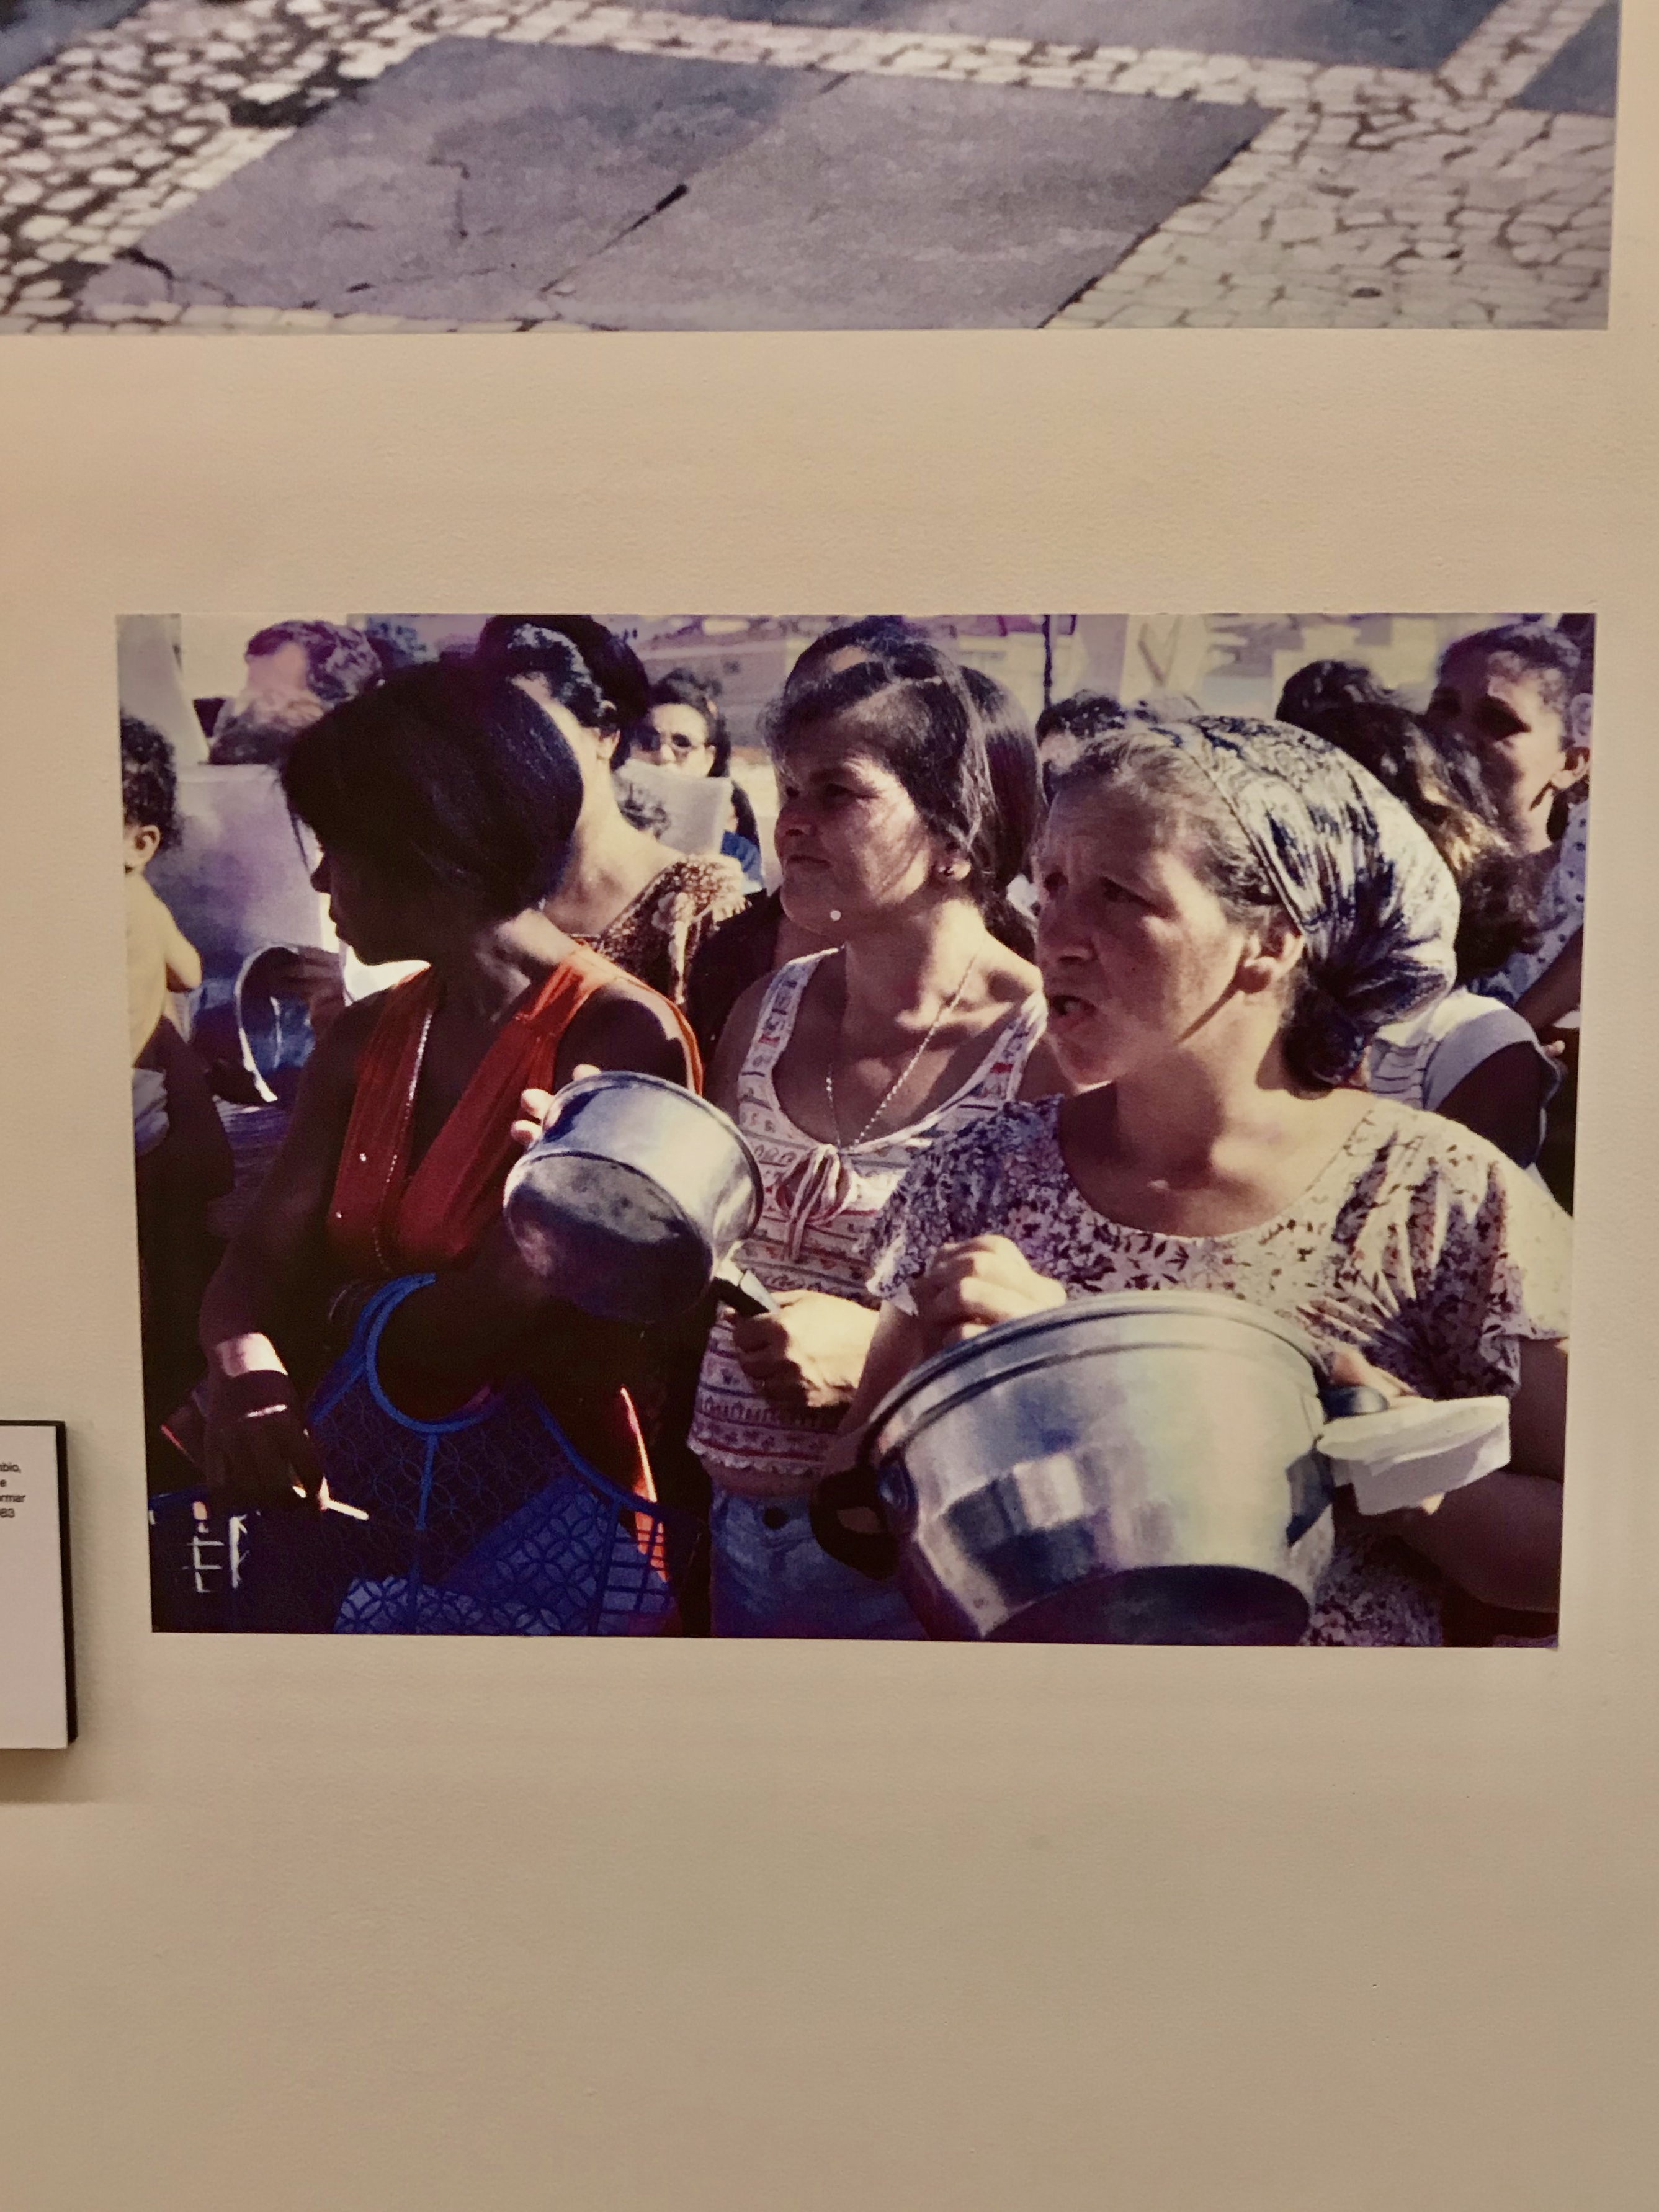 Foto tirada da amostra das "Clube das Mães da Zona Sul"; Mulheres na manifestação reunidas batendo panelas; Foto: Leticia Falaschi